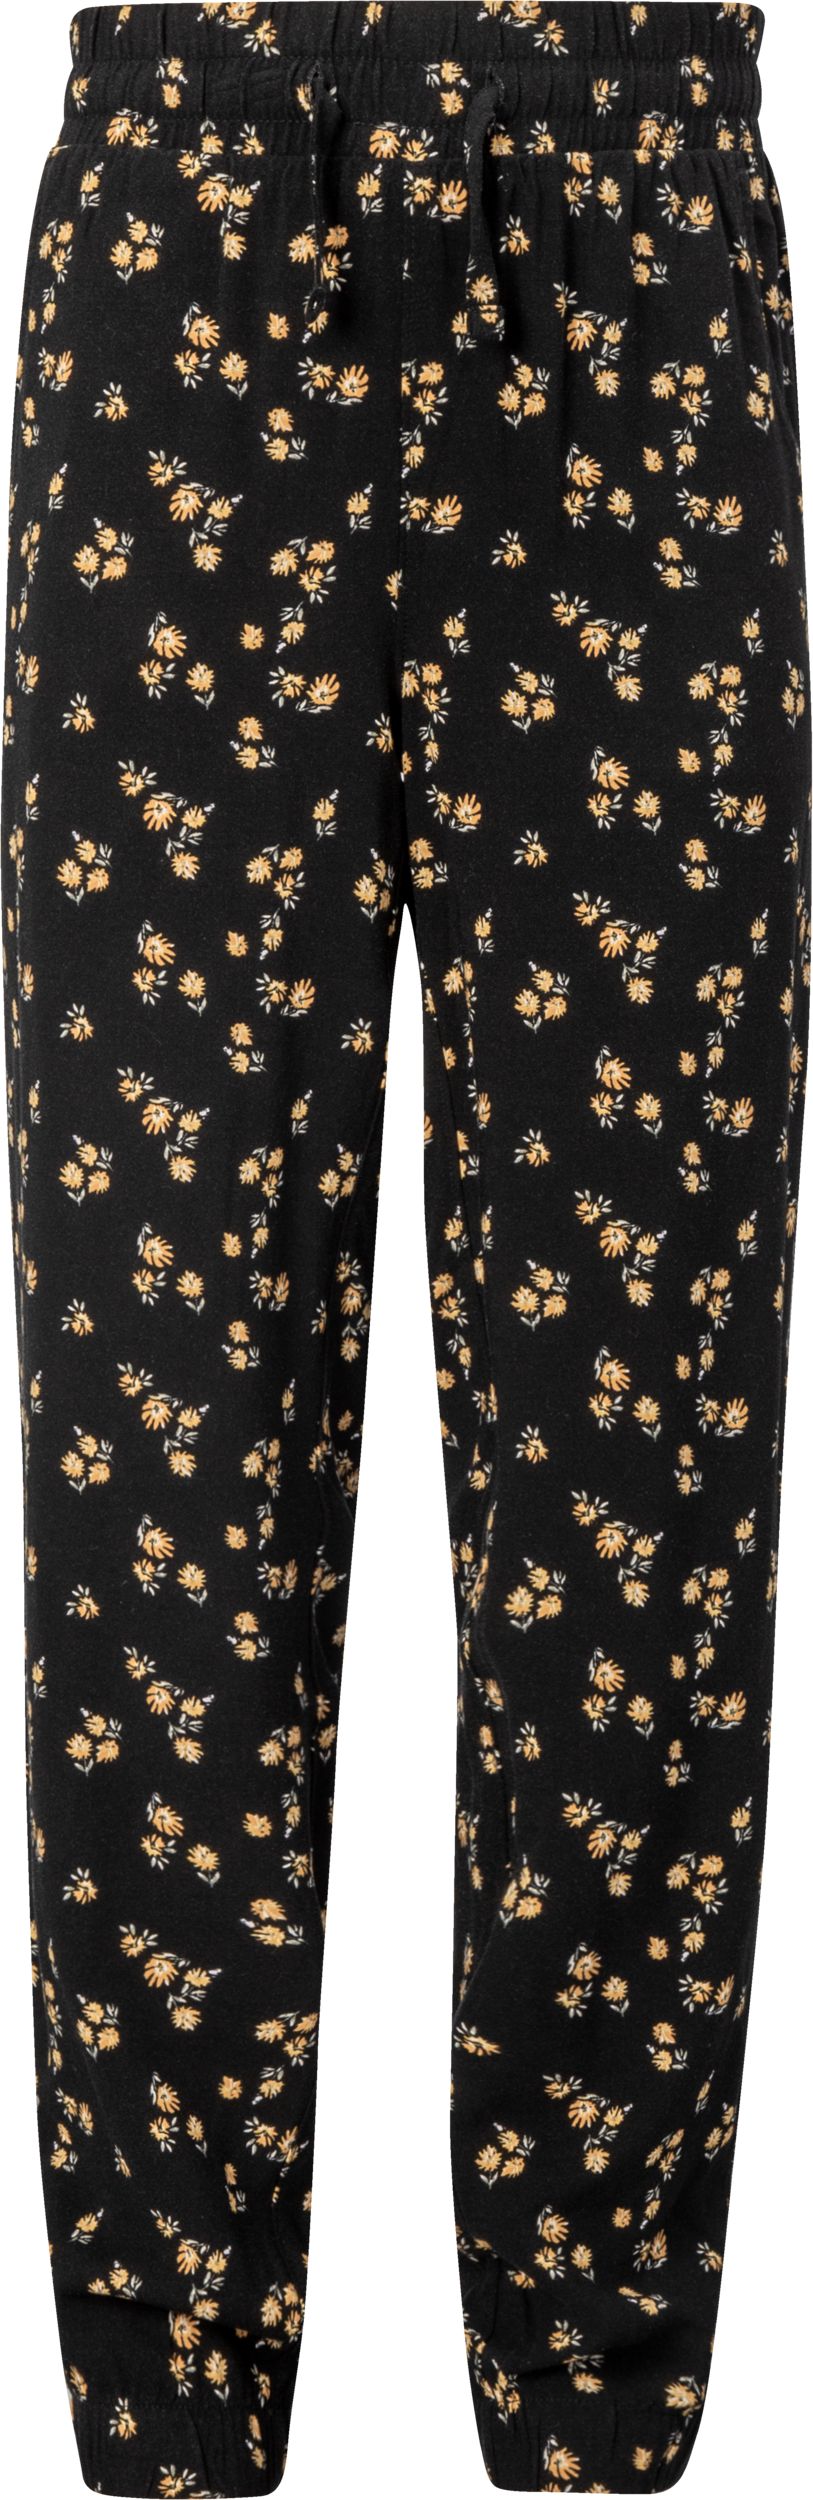 Polo Bear Print Jogger Pajama Pants